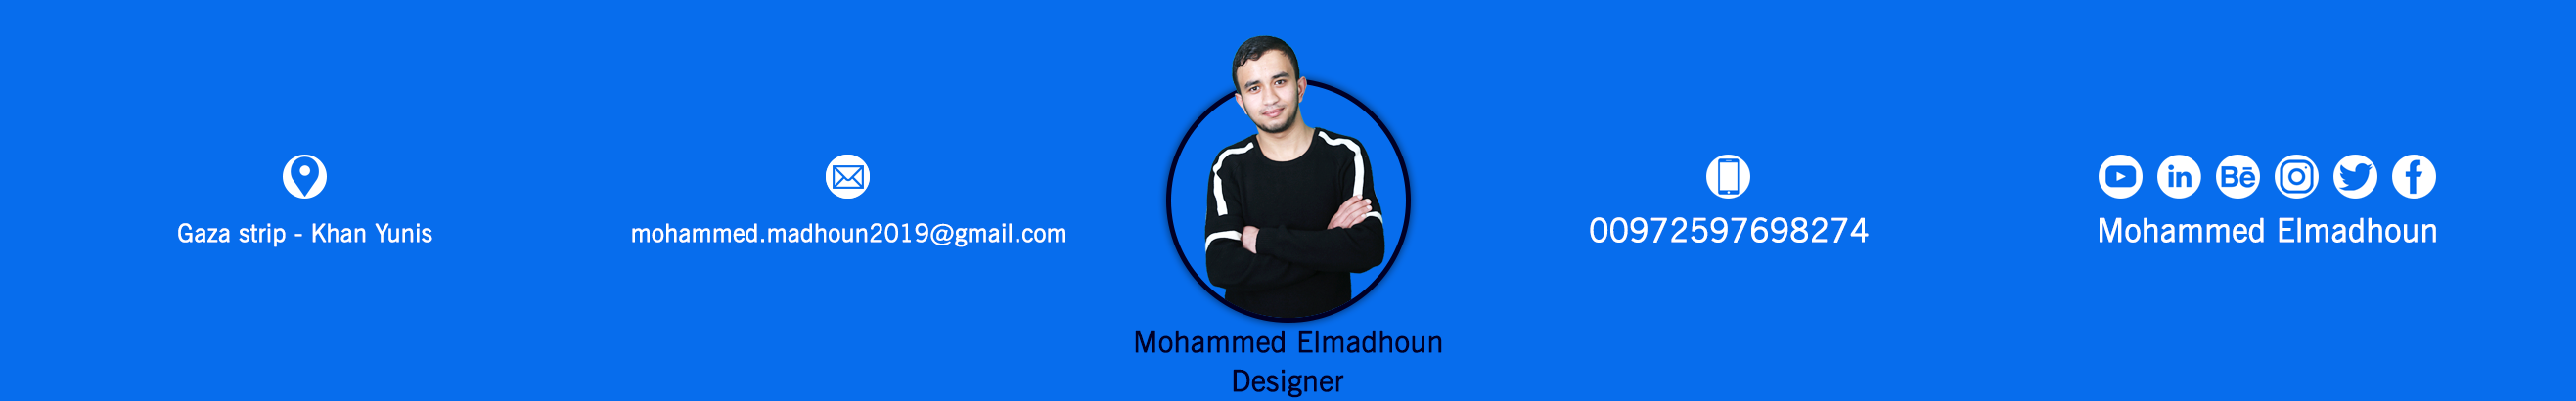 Bannière de profil de Mohammed Elmadhoun